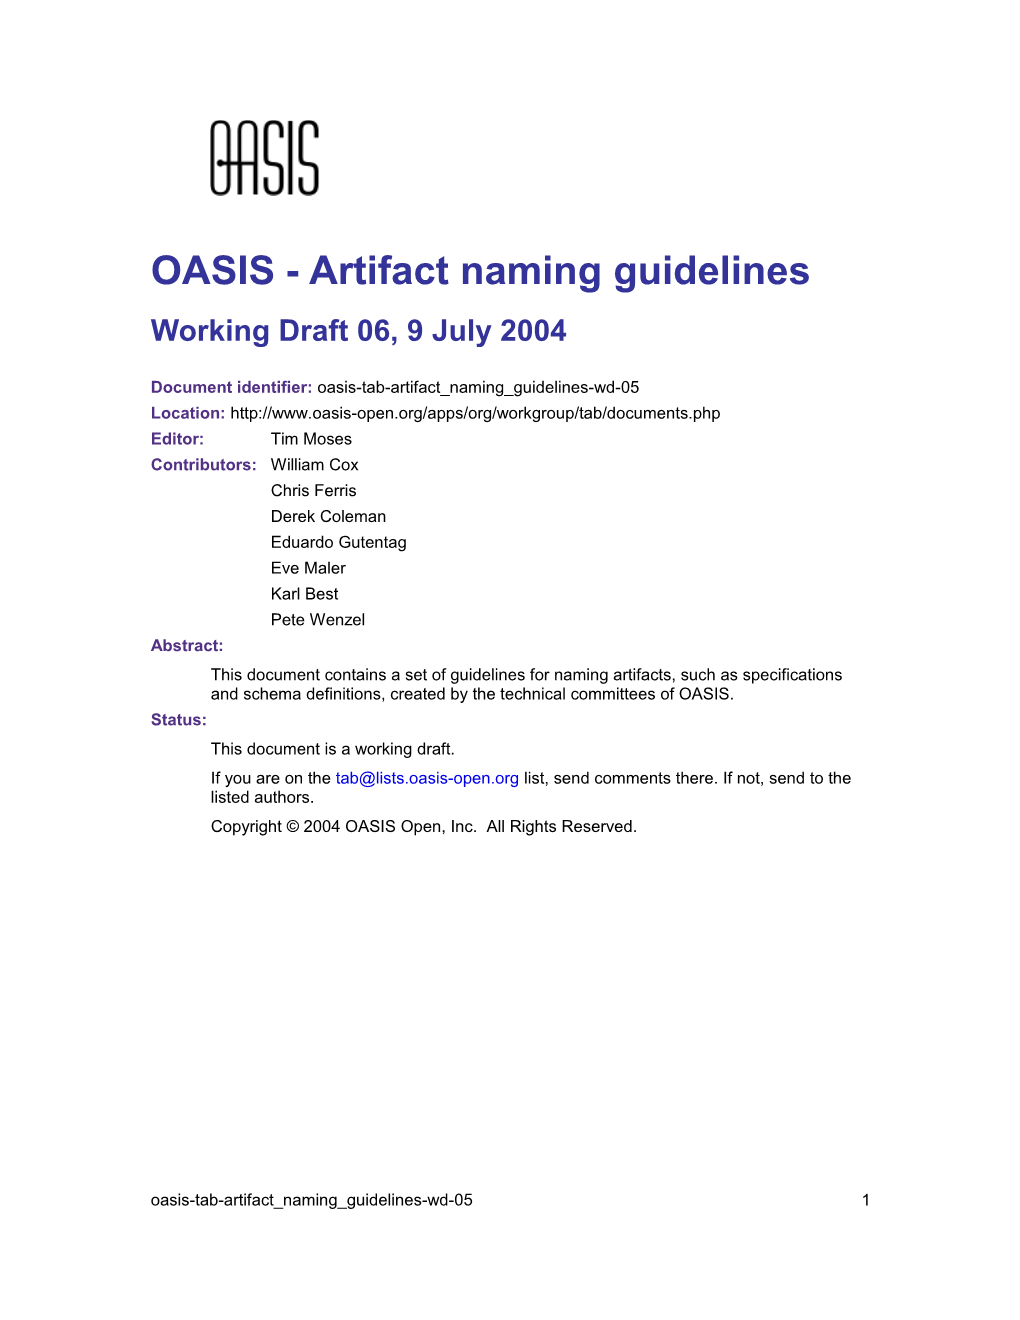 OASIS - Artifact Naming Guidelines